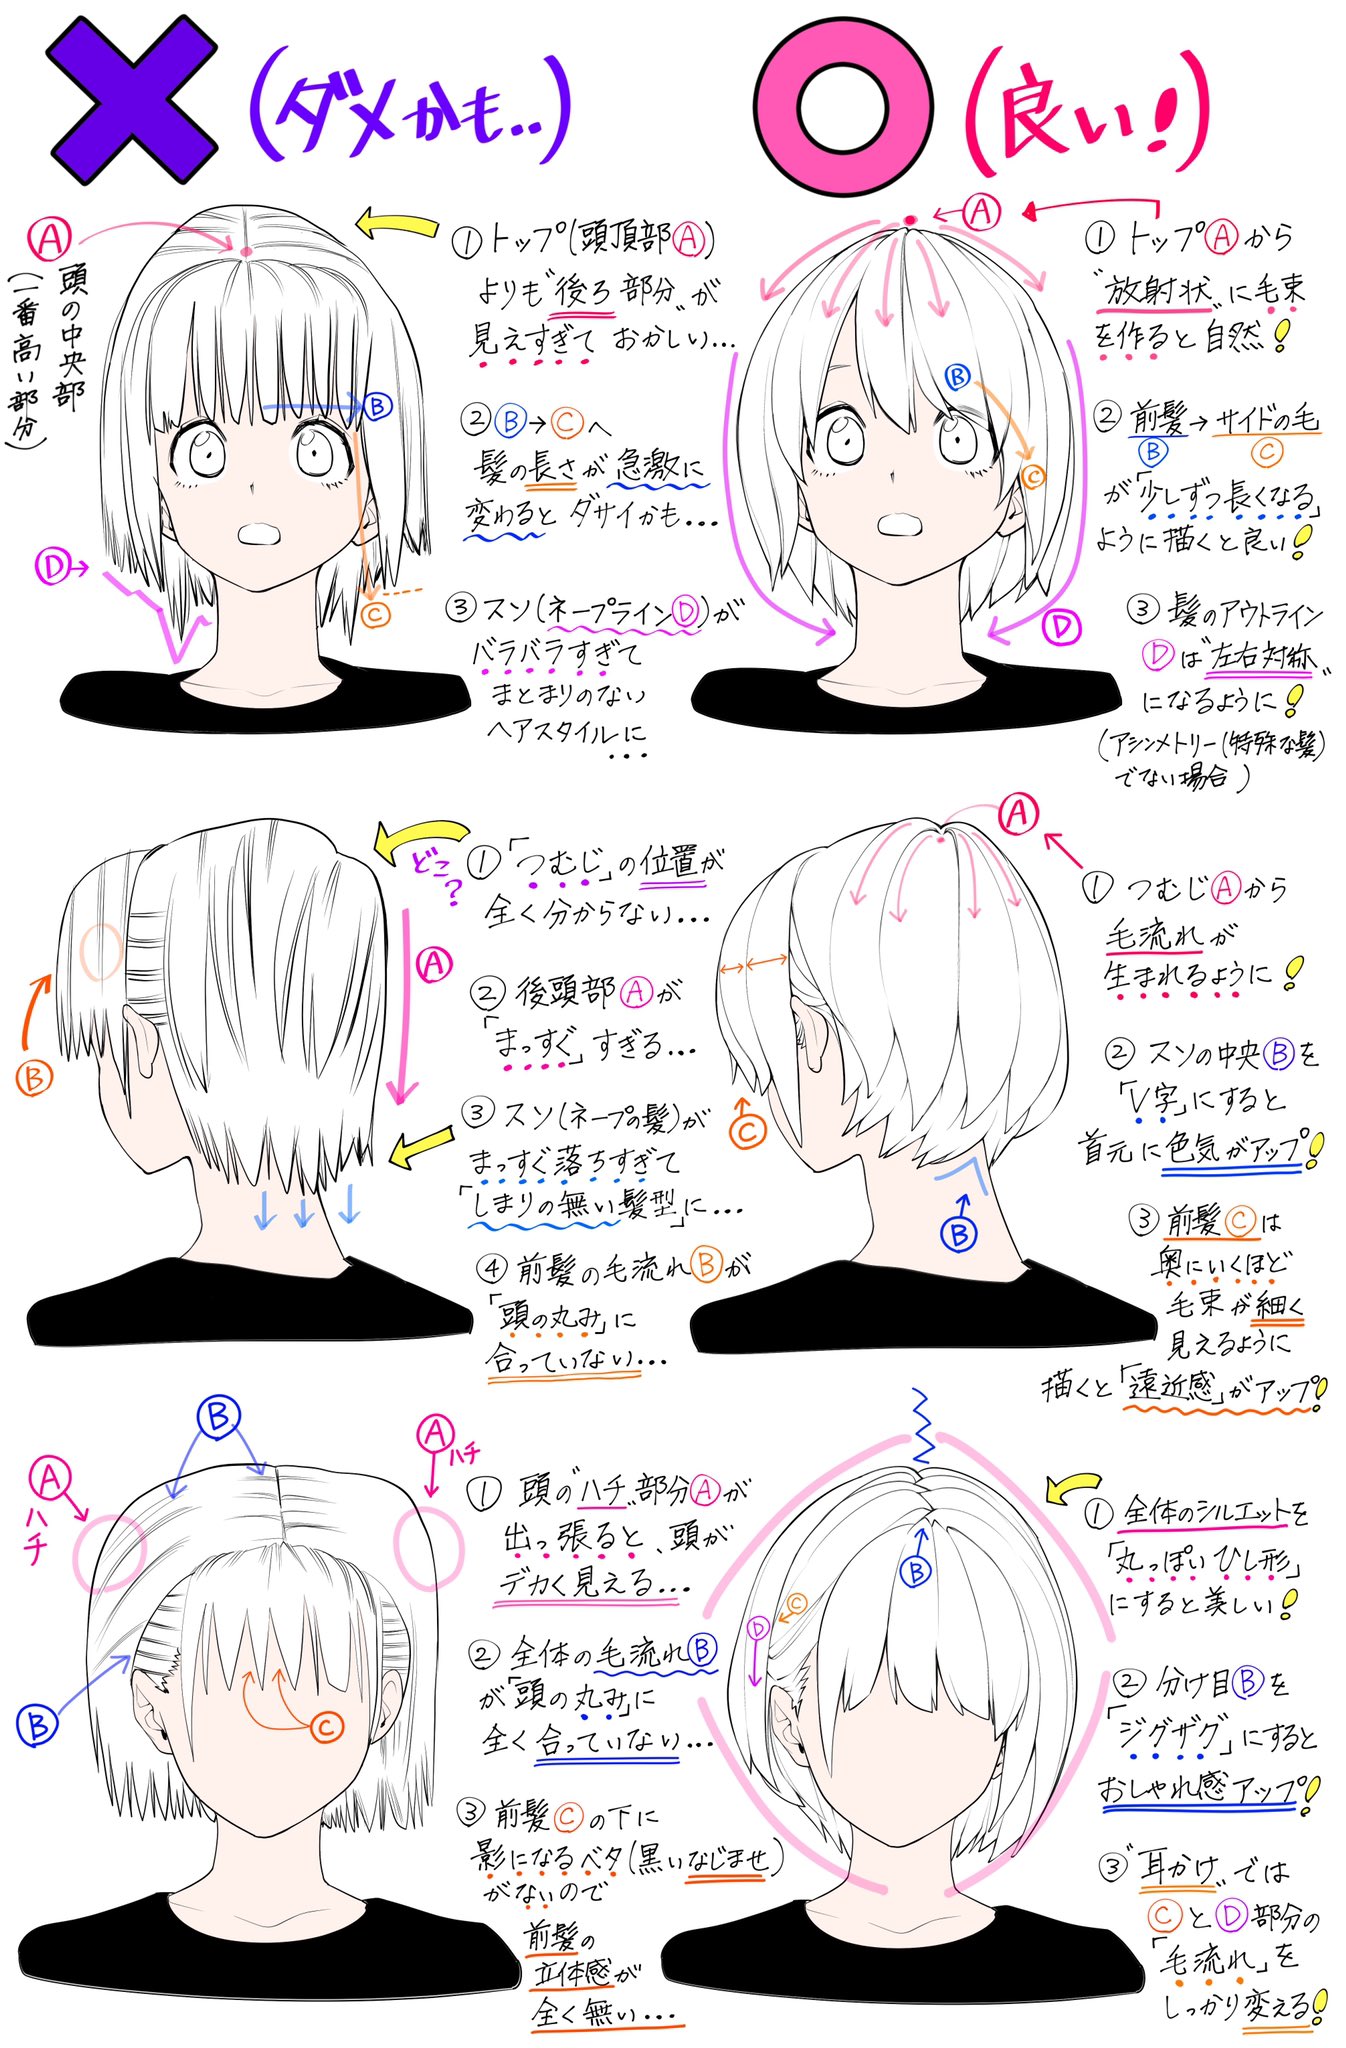 吉村拓也 イラスト講座 Twitter પર ショートヘアの描き方 女の子の髪型が上達するための ダメかも と 良いかも